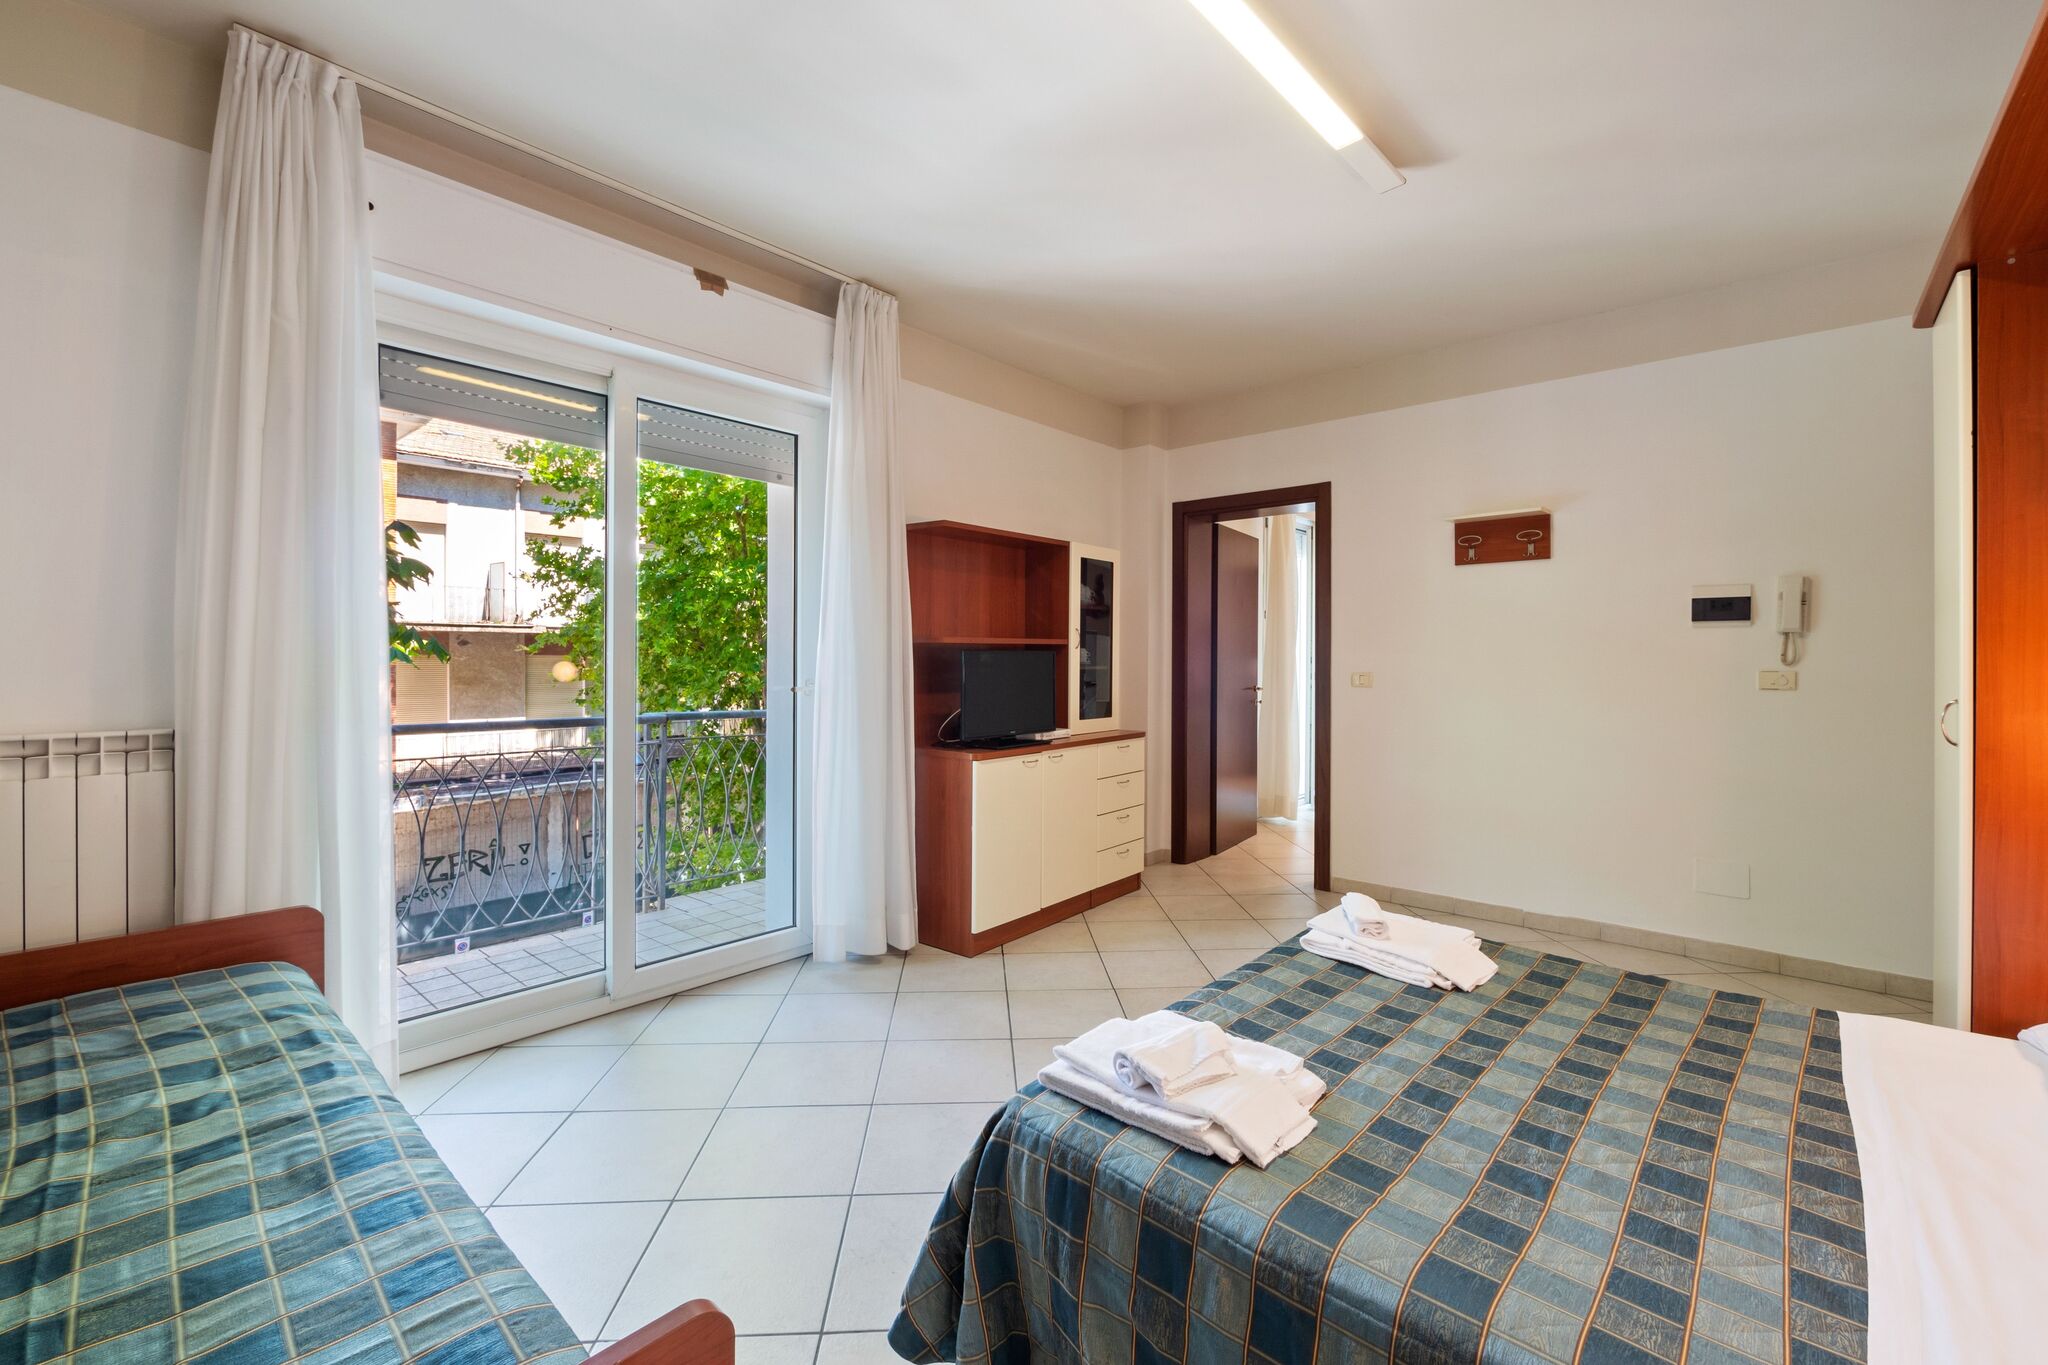 Premium Apartment in Rimini with Balcony